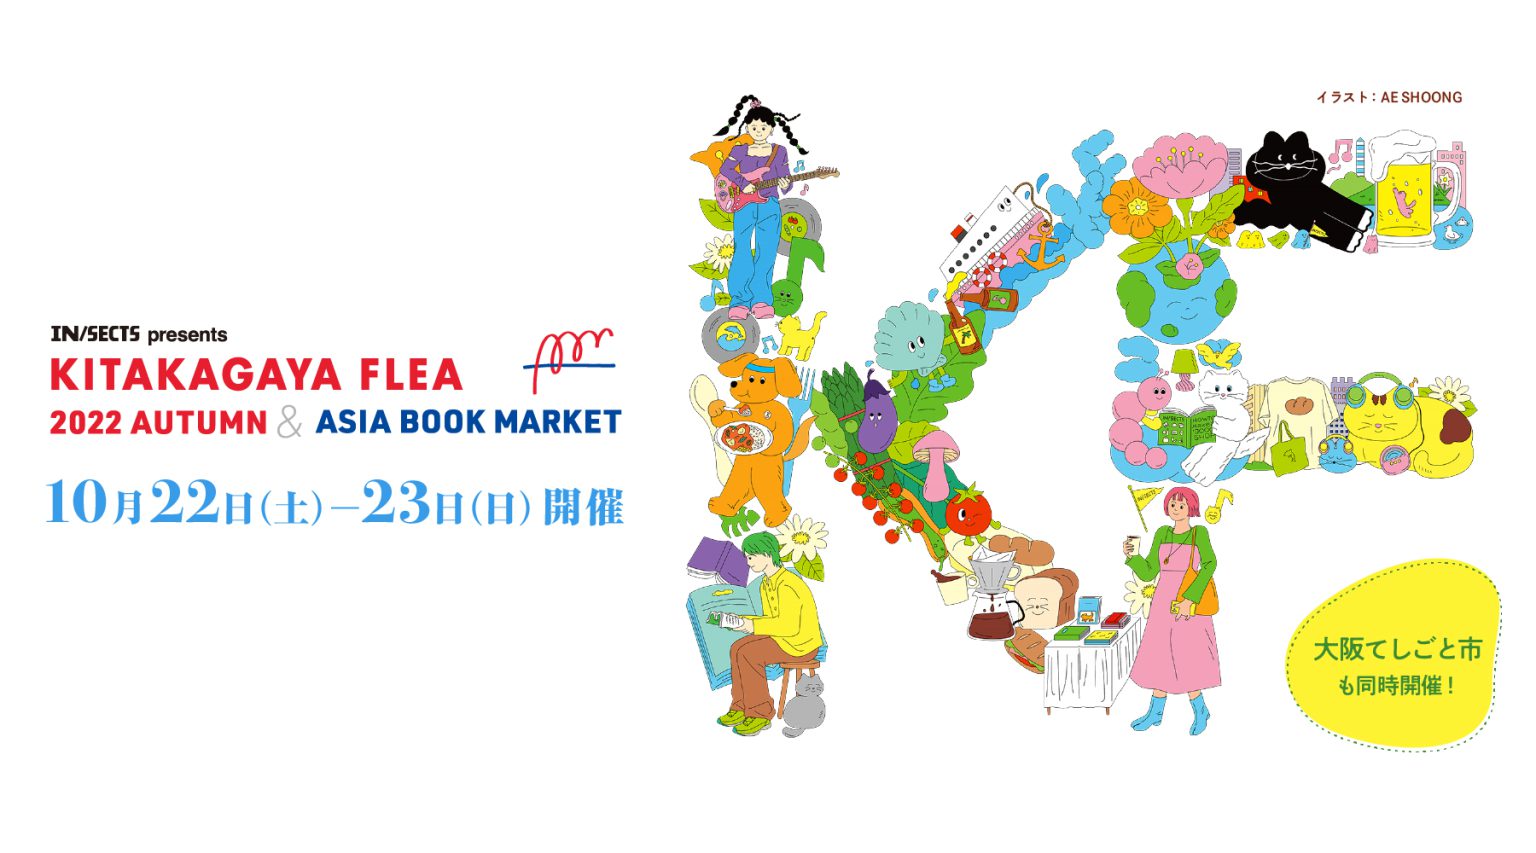 2022年10月22日・23日KITAKAGAYA FLEA 2022 AUTUMN & ASIA BOOK MARKET に出店